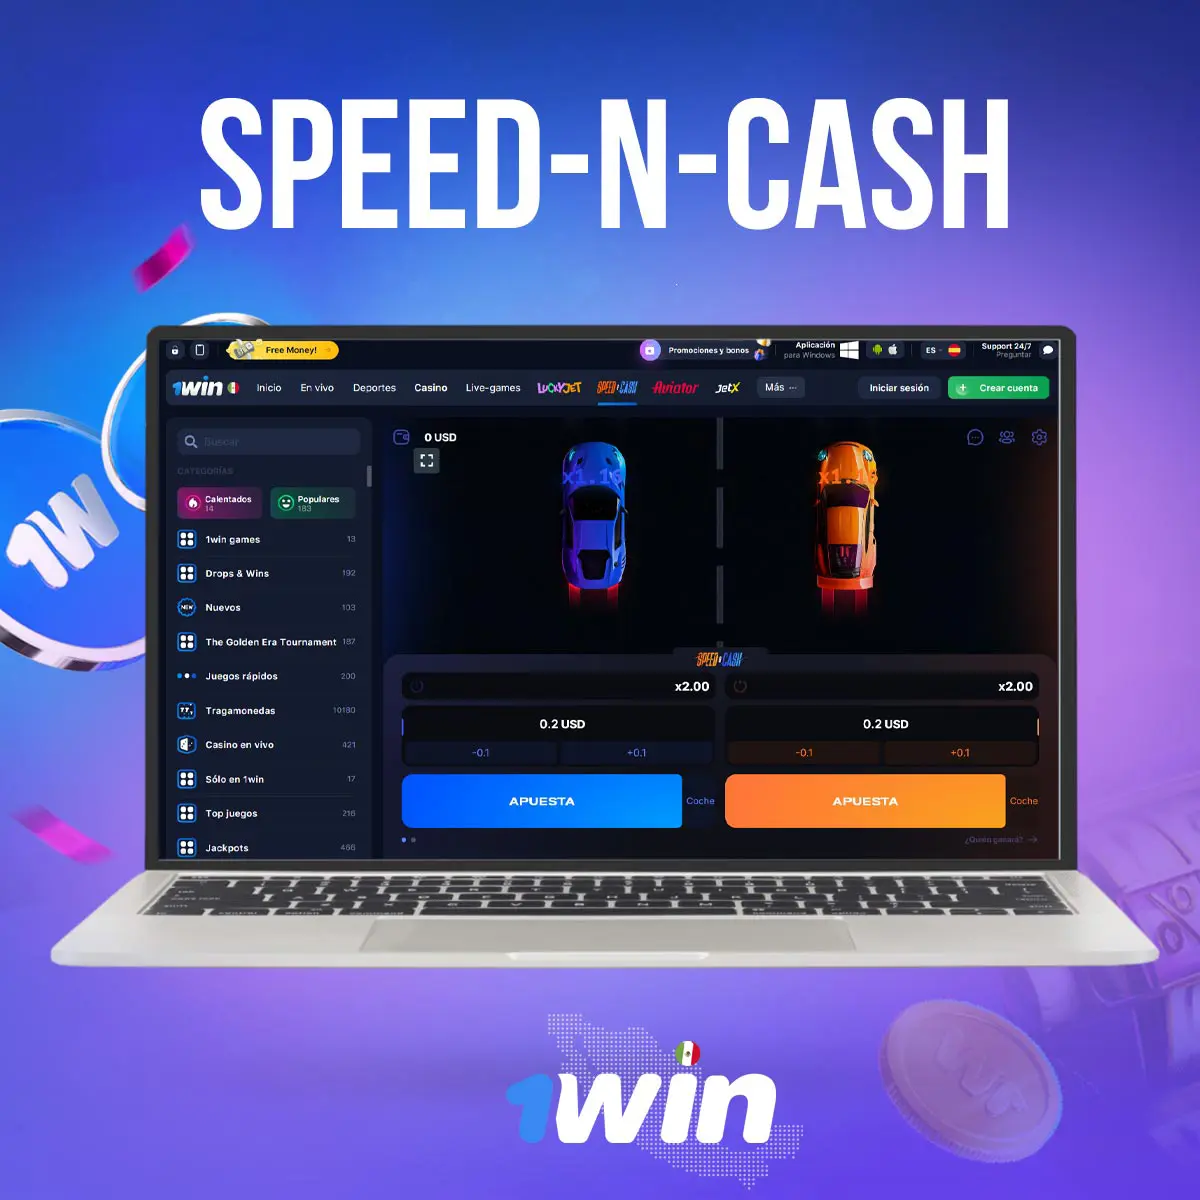 Cómo jugar a Speed-n-Cash en la aplicación móvil 1win